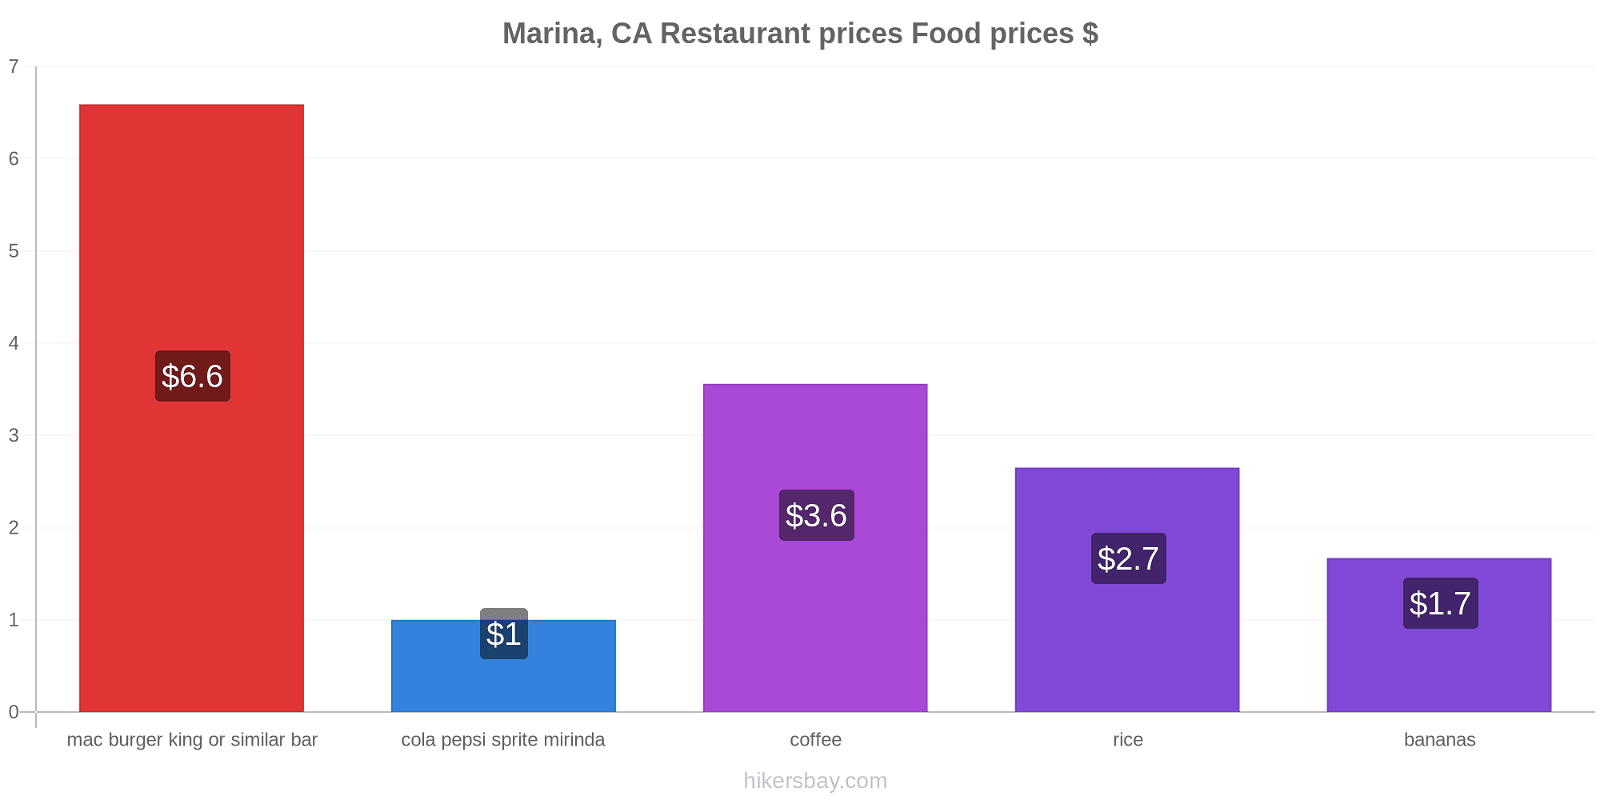 Marina, CA price changes hikersbay.com